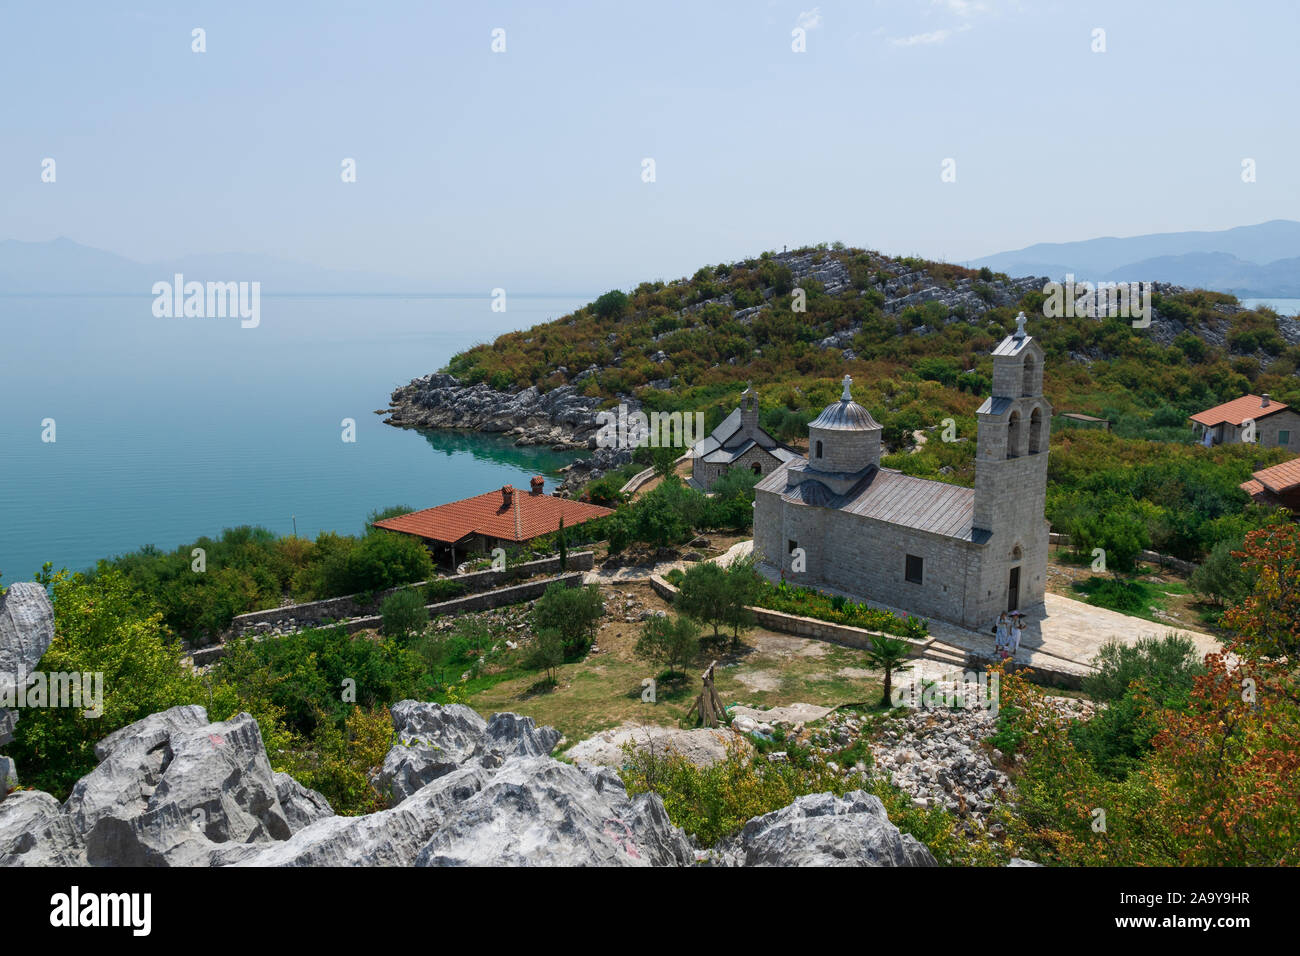 La vista dal punto più alto dell'isola di beška. Il monastero femminile Beska. Lago di Skadar. Montenegro. Foto Stock